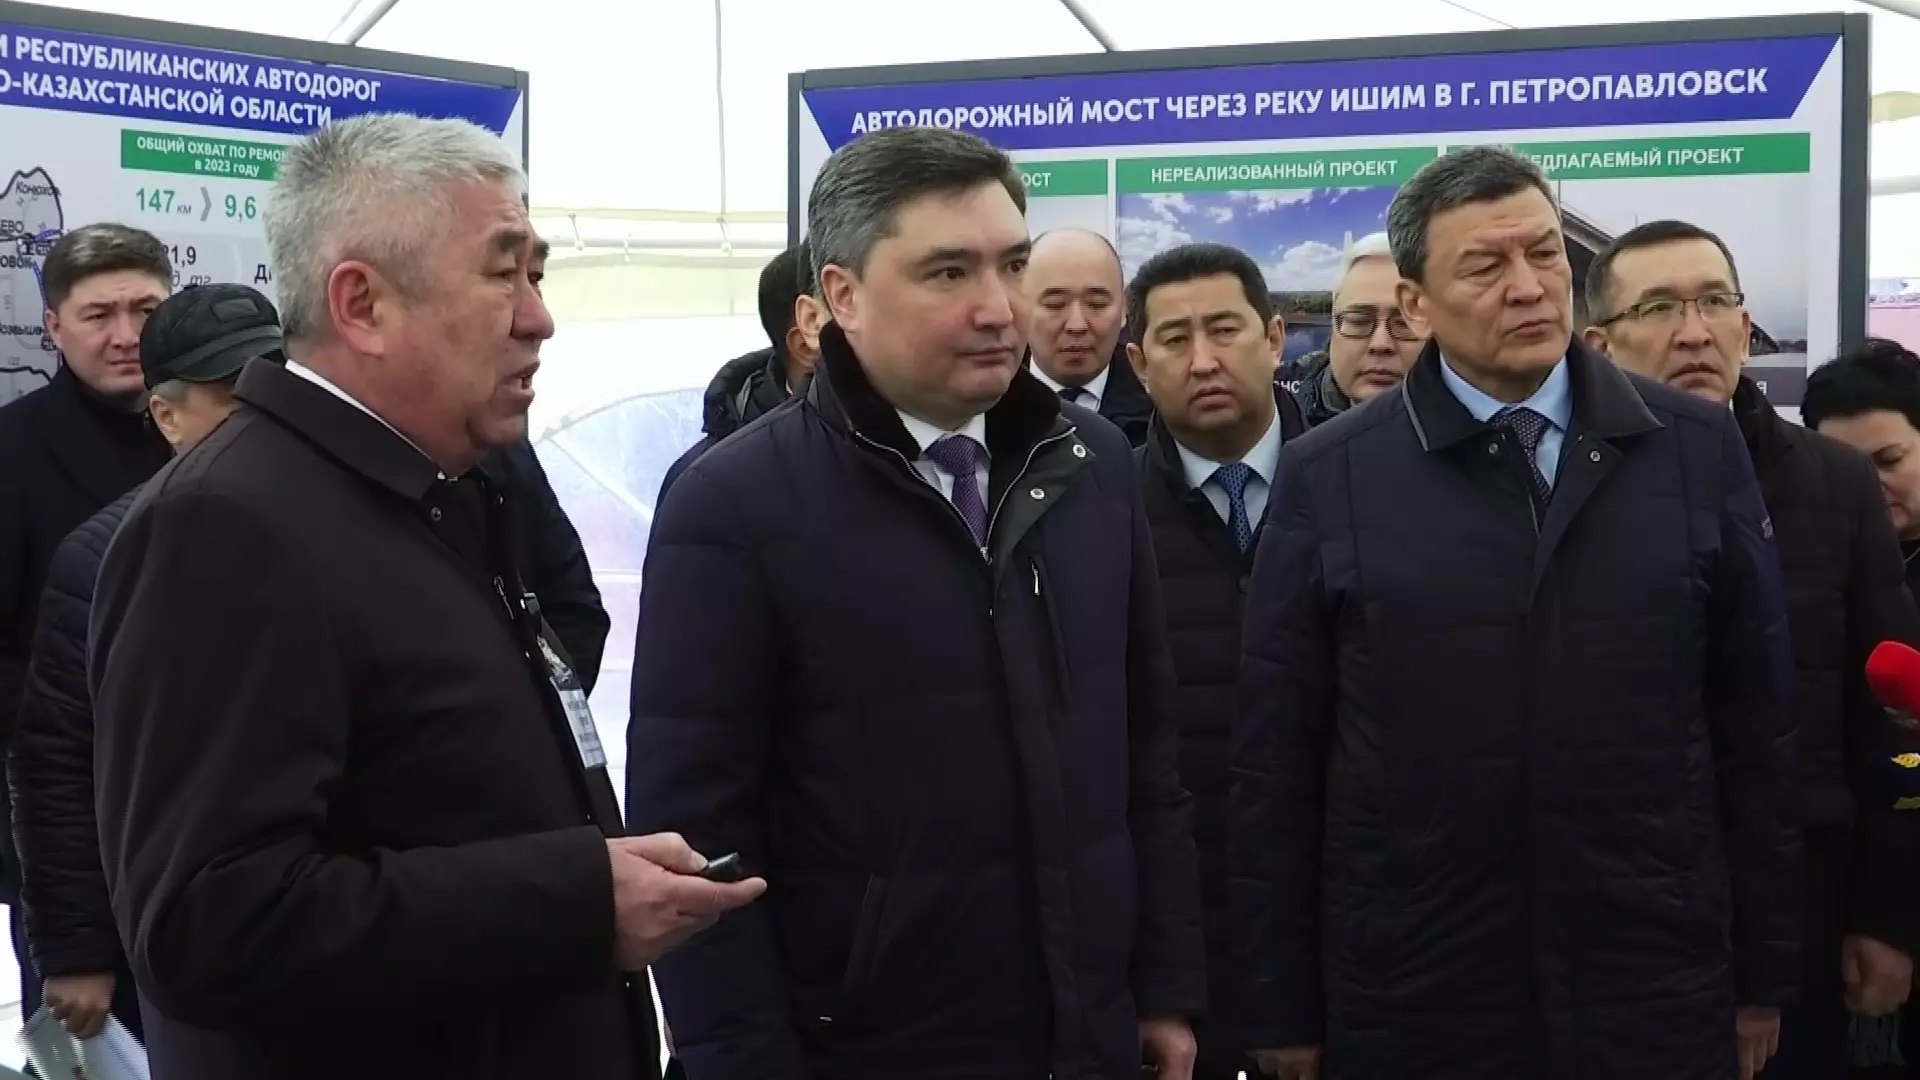 Чиновники попросили у премьер-министра денег на строительство нового путепровода в Петропавловске